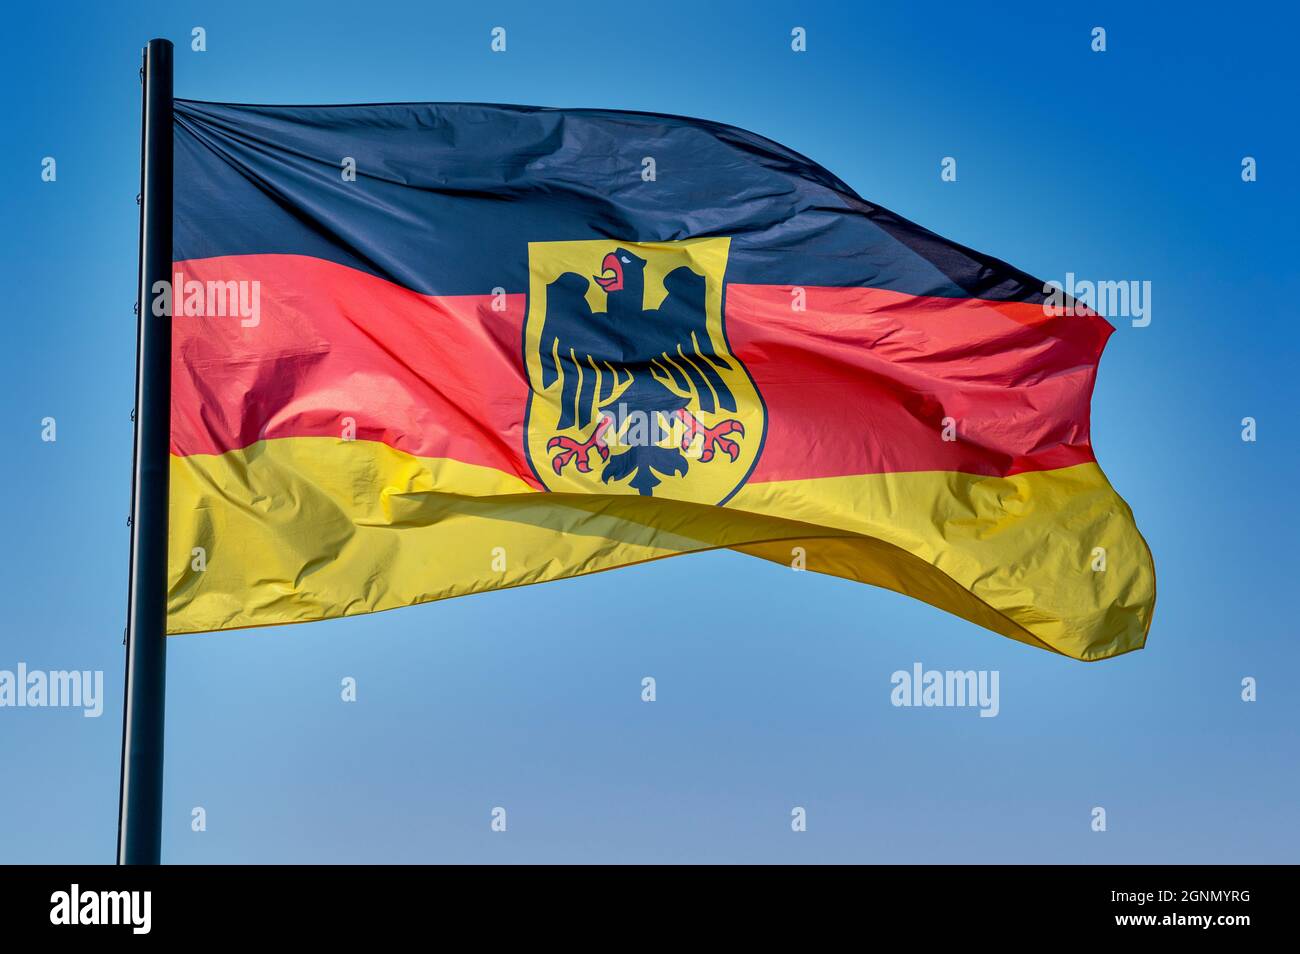 Pabellón oficial de las autoridades federales (alemán: Bundesdienstflagge) de la República Federal de Alemania Foto de stock